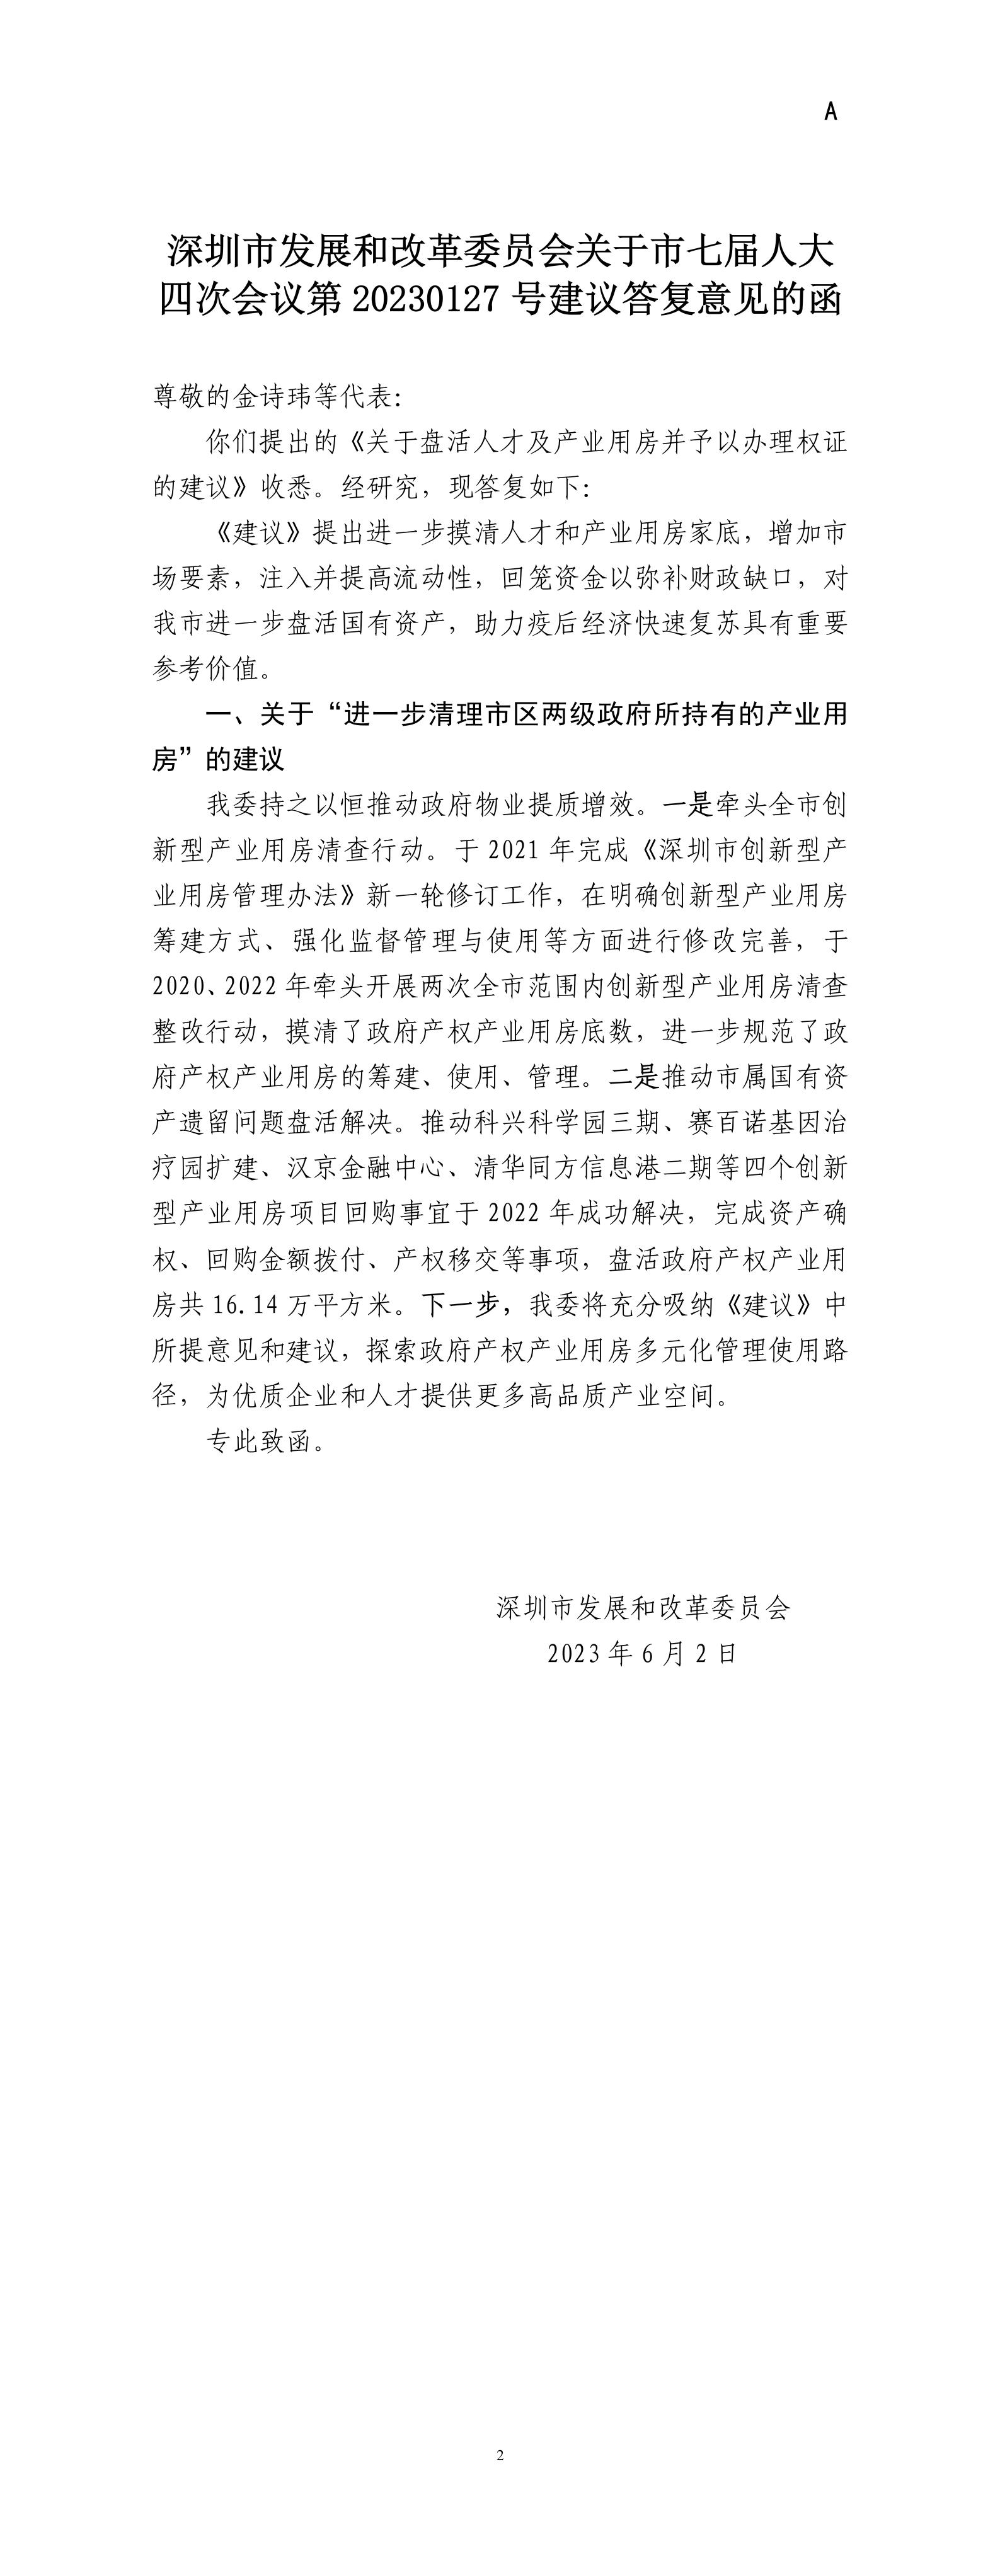 深圳市发展和改革委员会关于市七届人大四次会议第20230127号建议答复意见的函.jpg